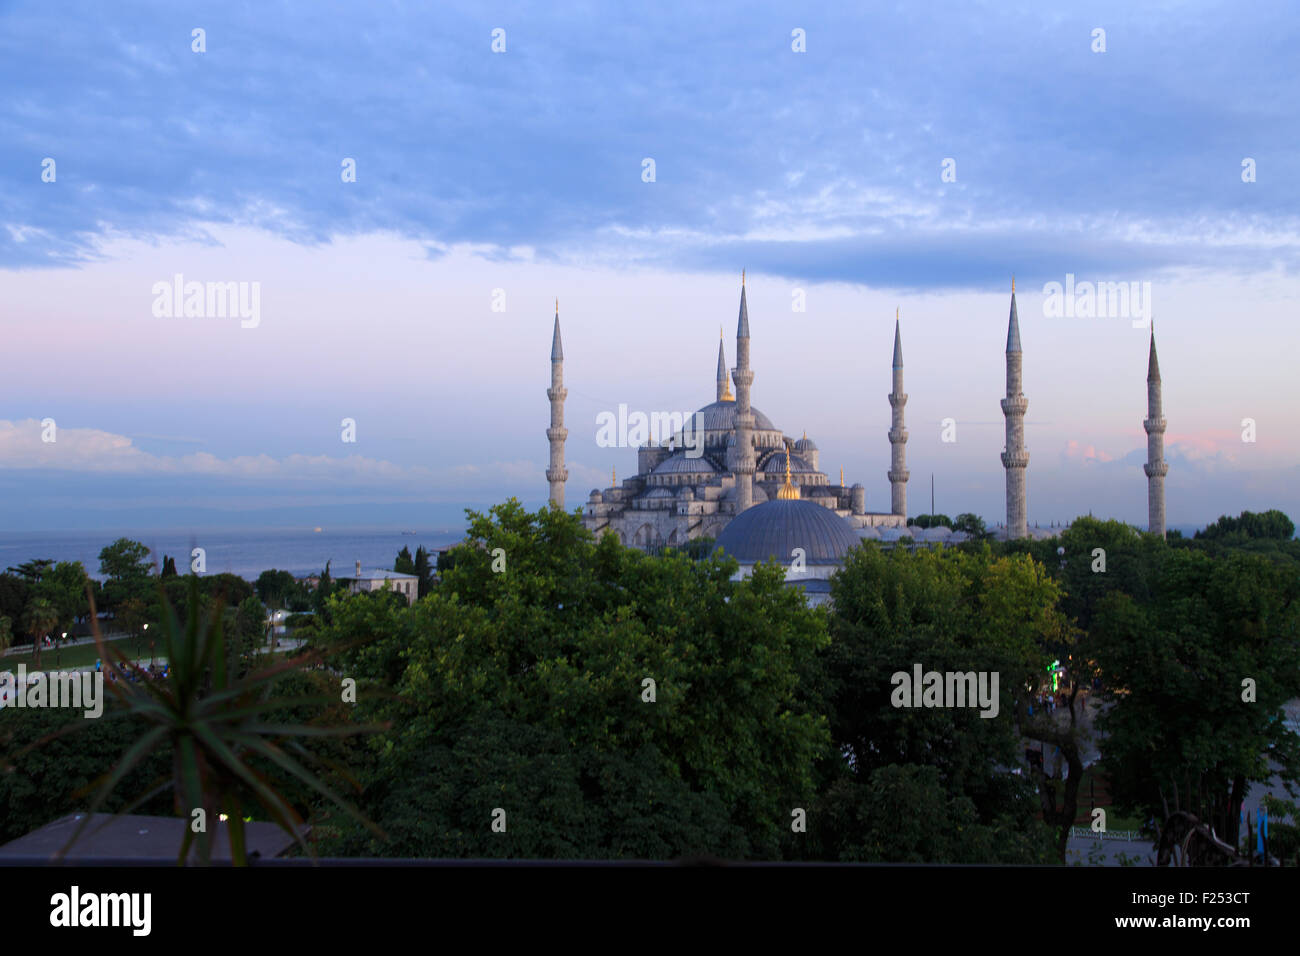 Blaue Moschee, auch bekannt als Sultanahmet Moschee durch das Gebet bei Sonnenuntergang in Istanbul, Türkei Stockfoto